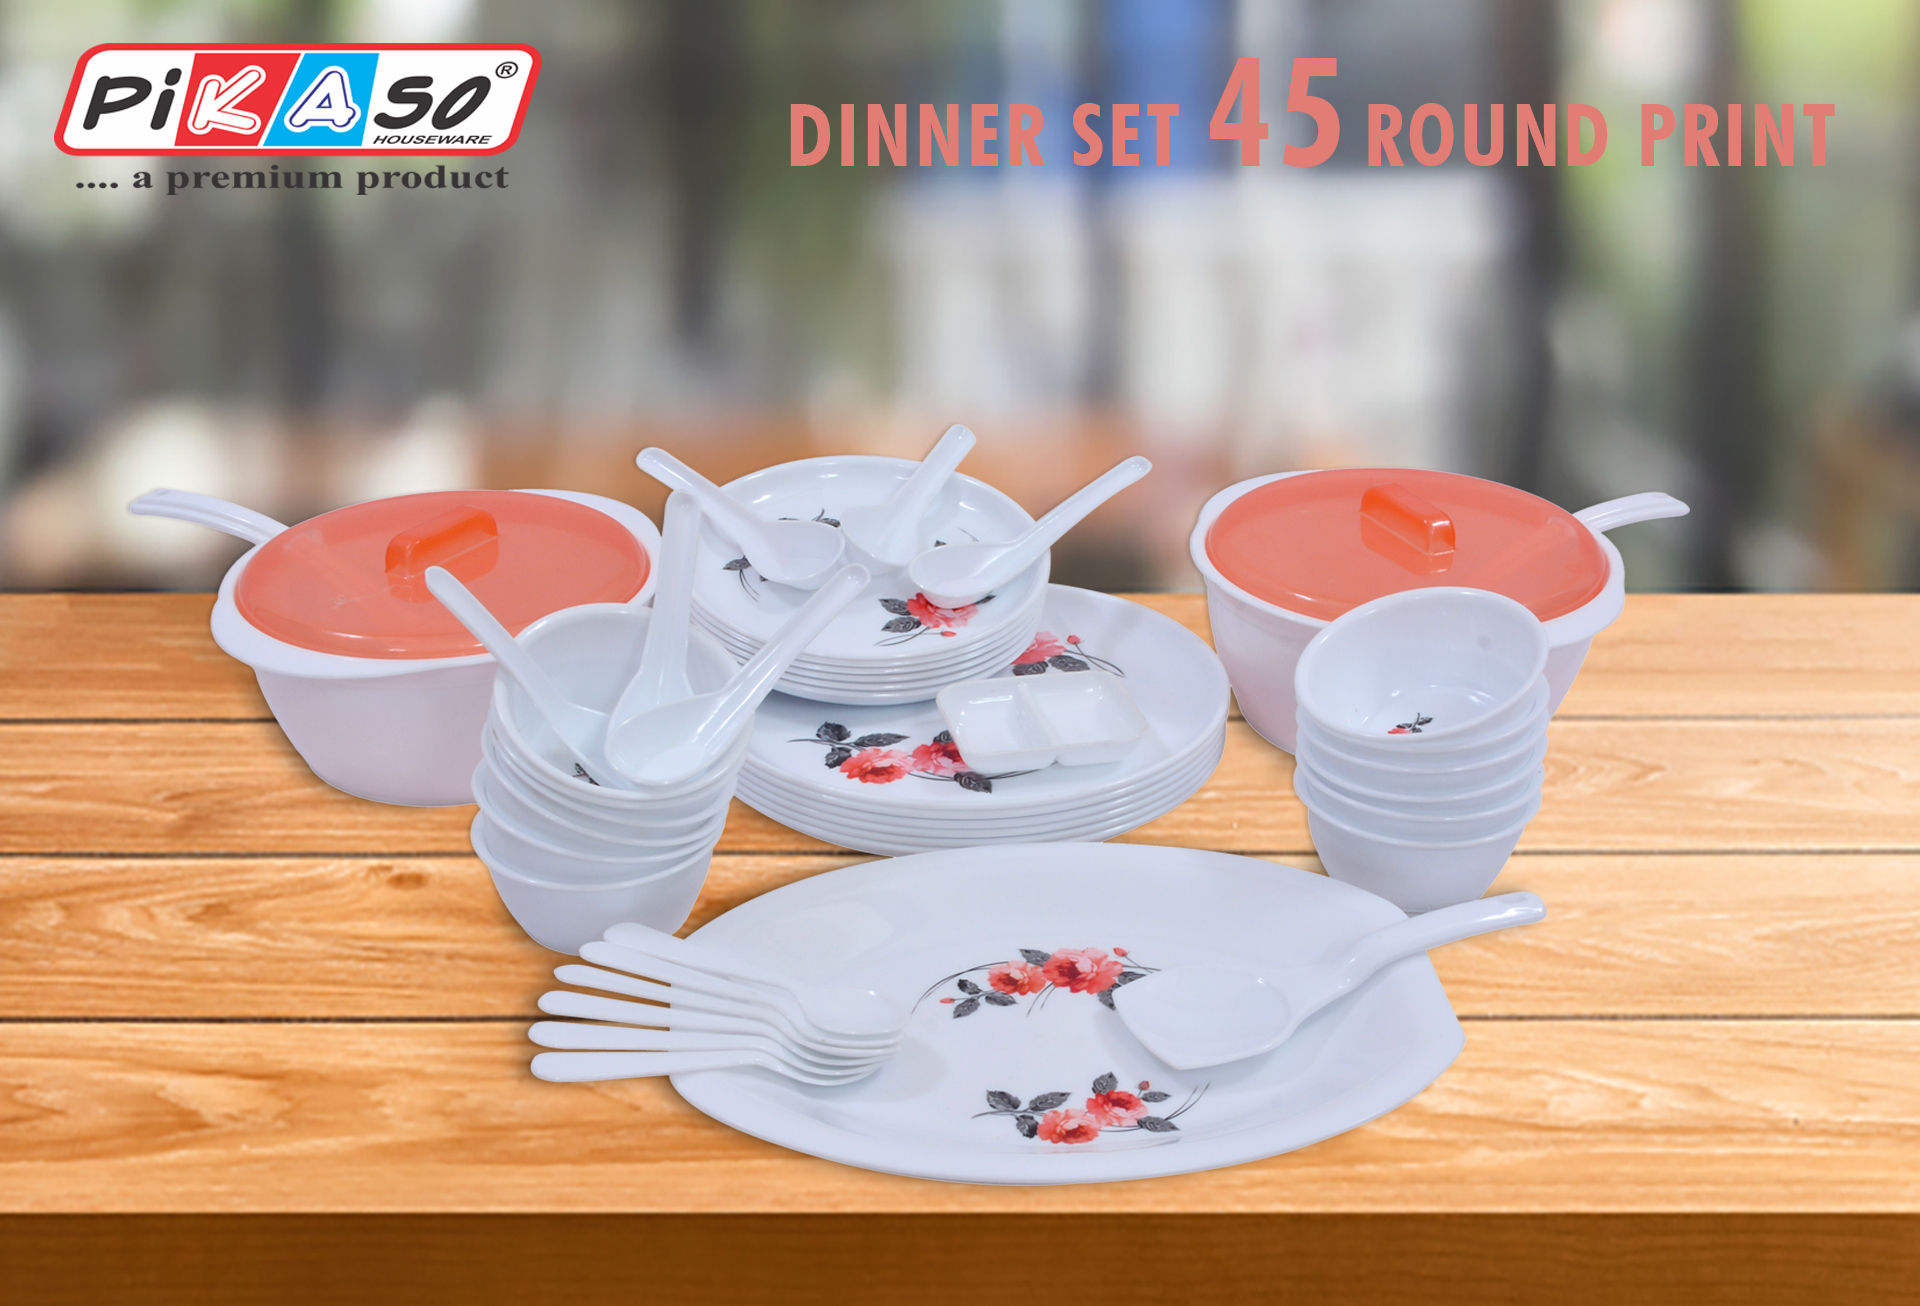 Round Dinner Set (45 pc set)